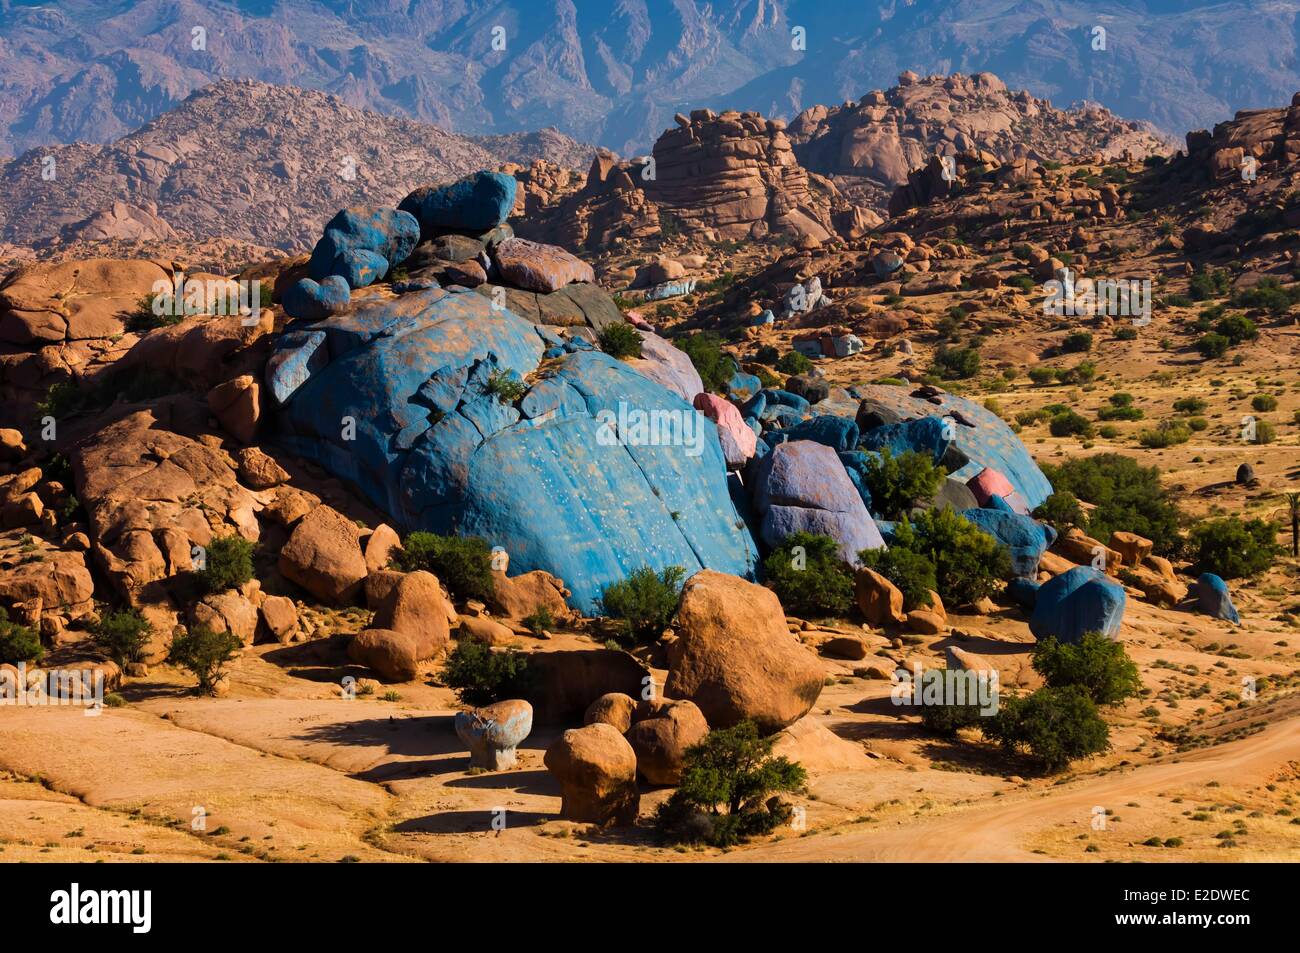 Il Marocco Anti Atlas Tafraoute rocce blu dell'artista Jean Verame nel mezzo del djebel Foto Stock